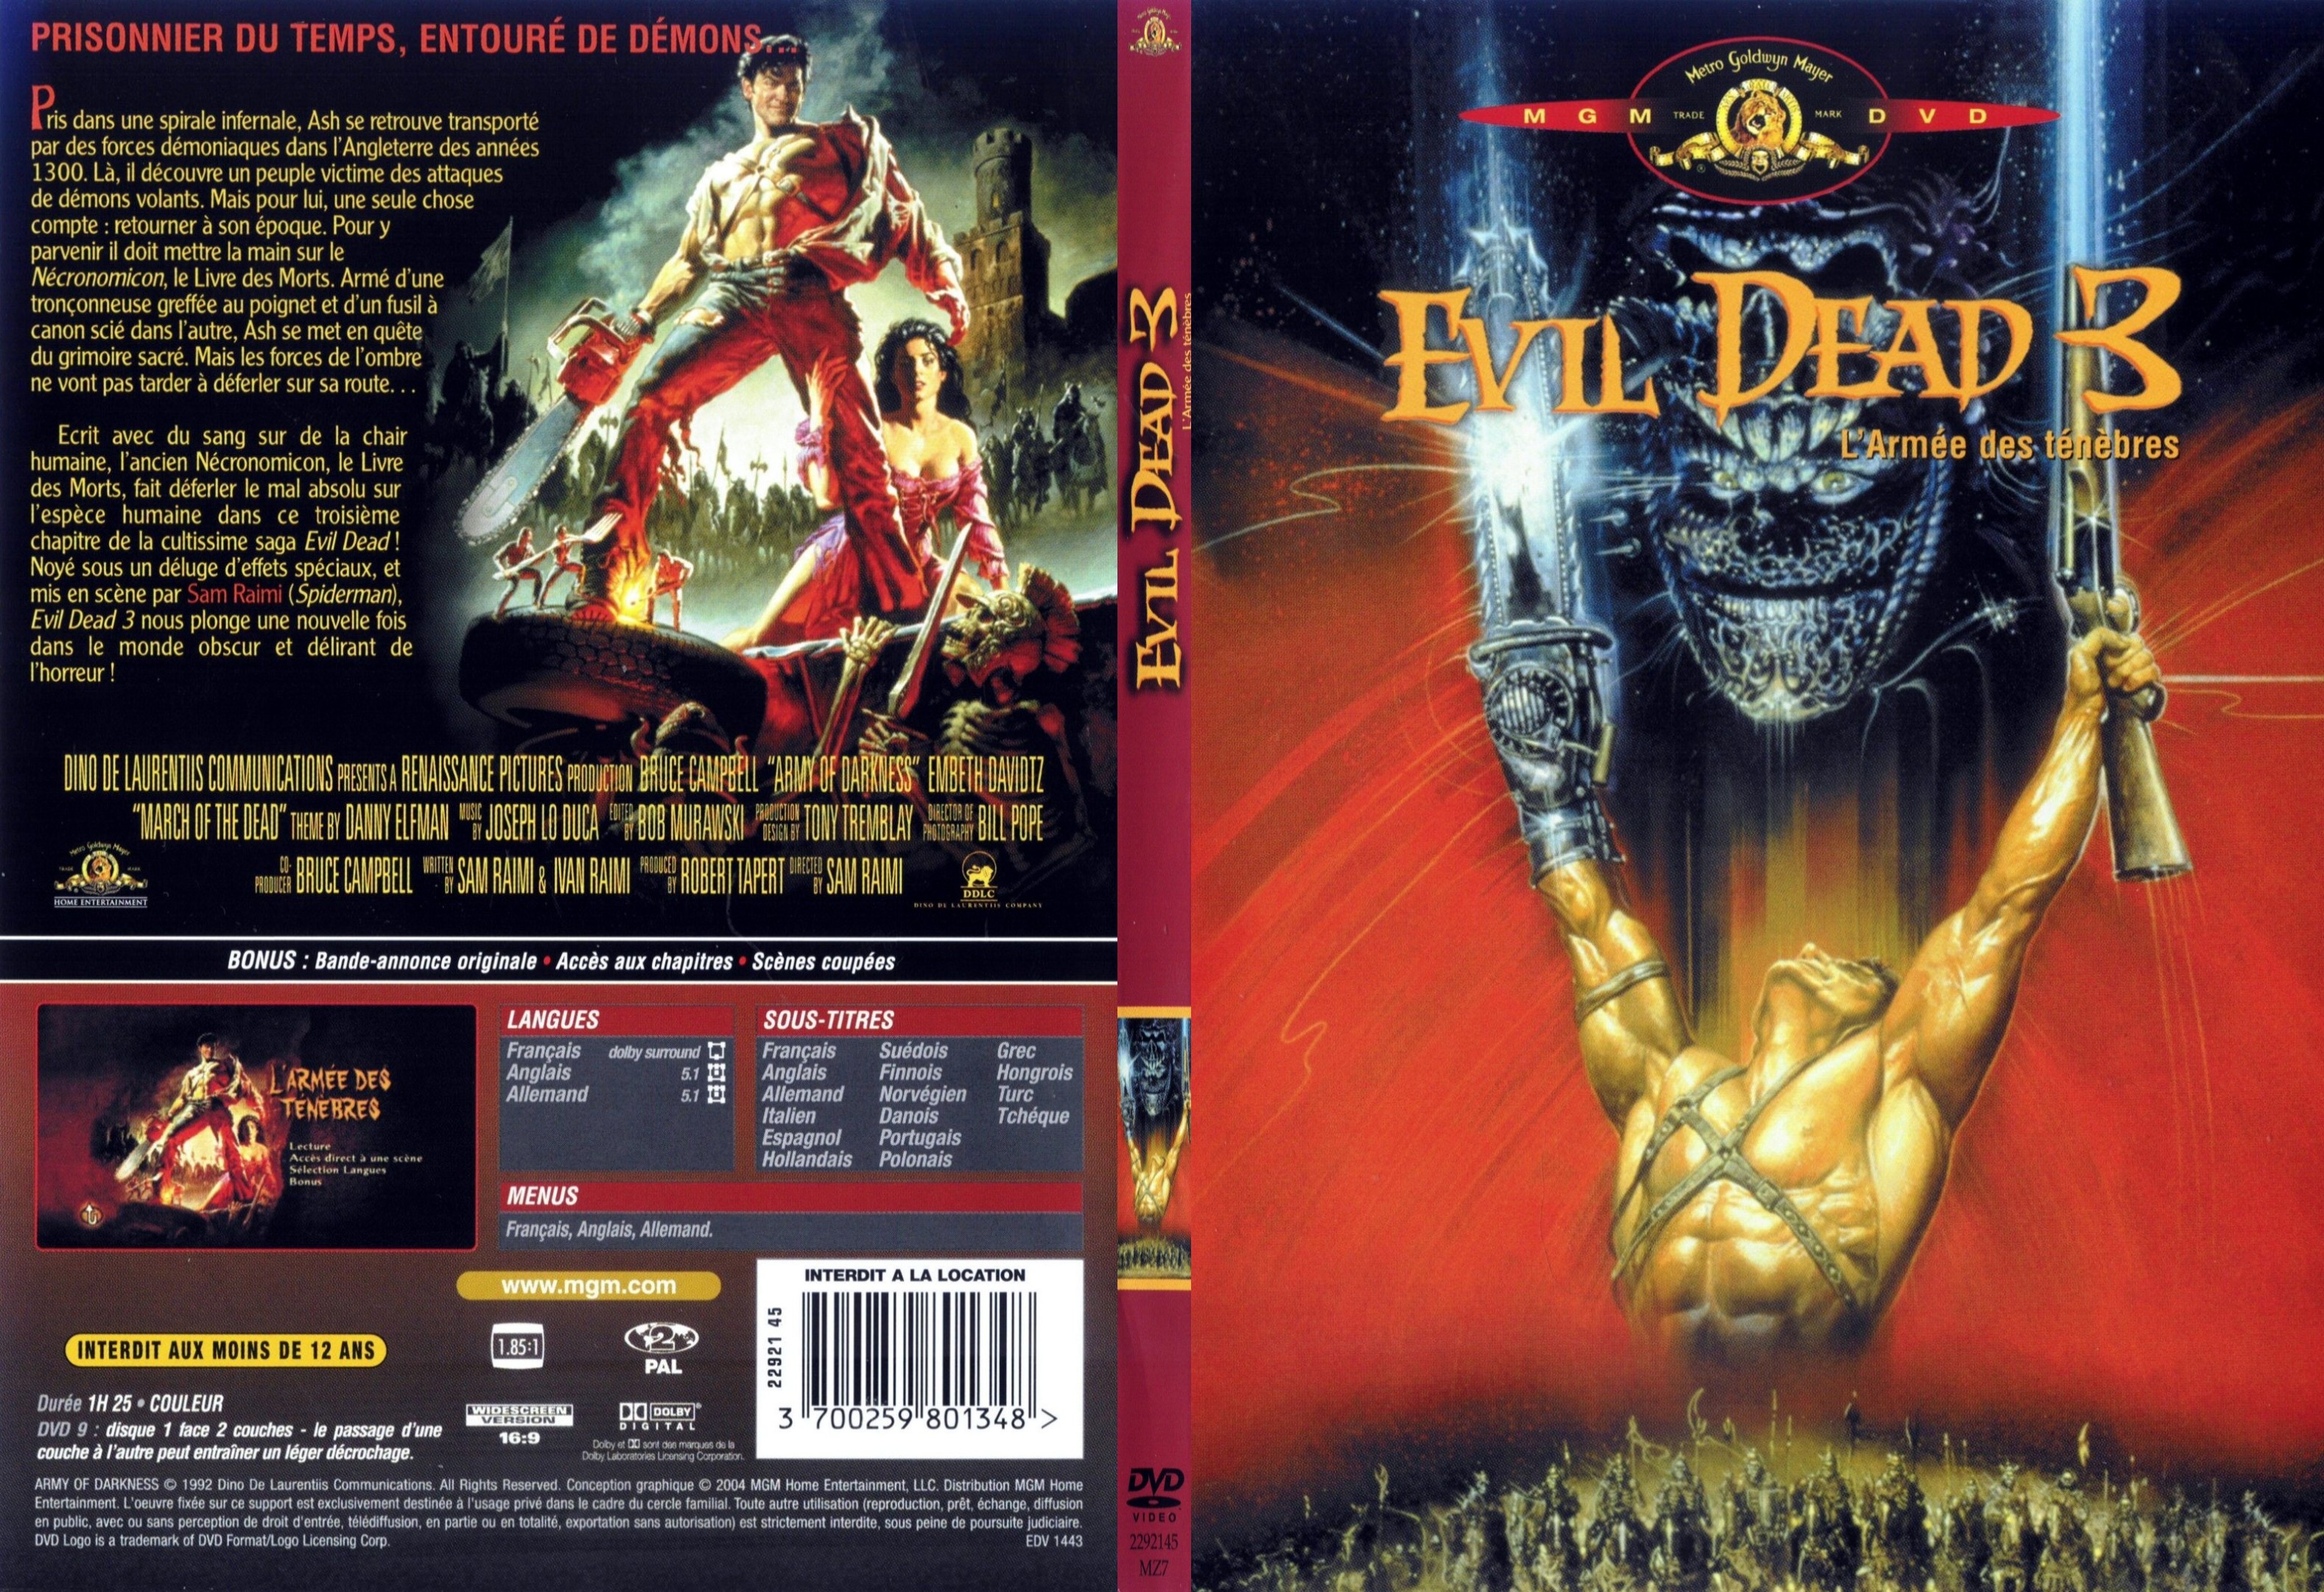 Jaquette DVD Evil dead 3 - SLIM